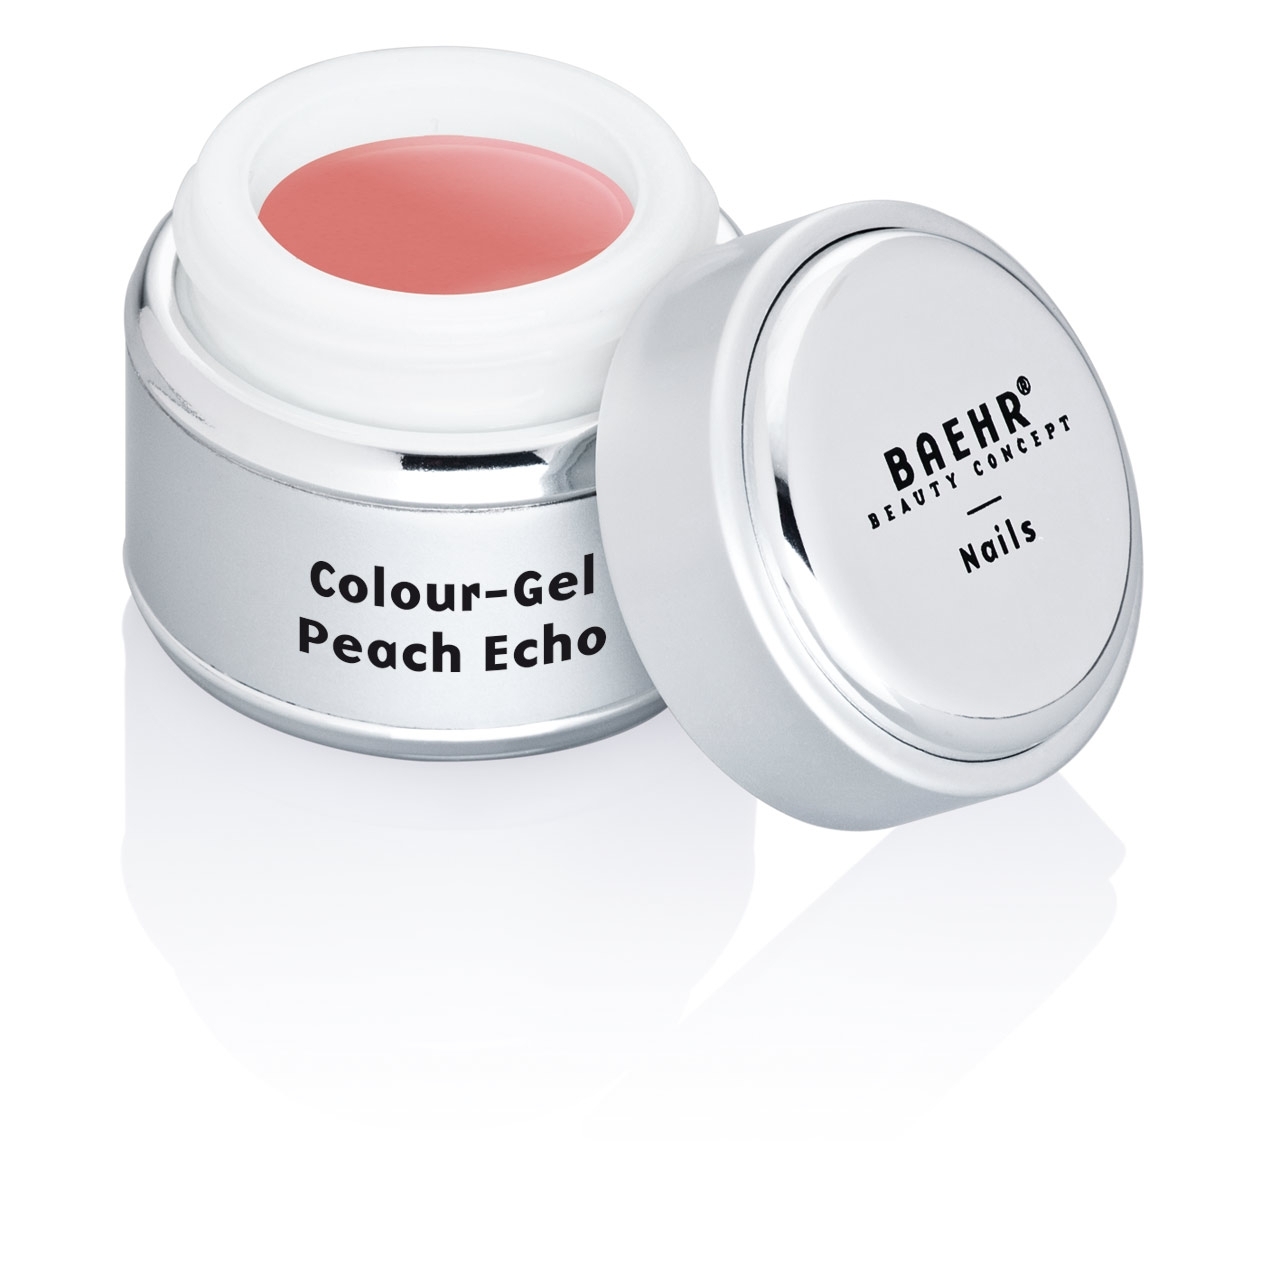 BAEHR BEAUTY CONCEPT - NAILS Colour-Gel Peach Echo 5 ml